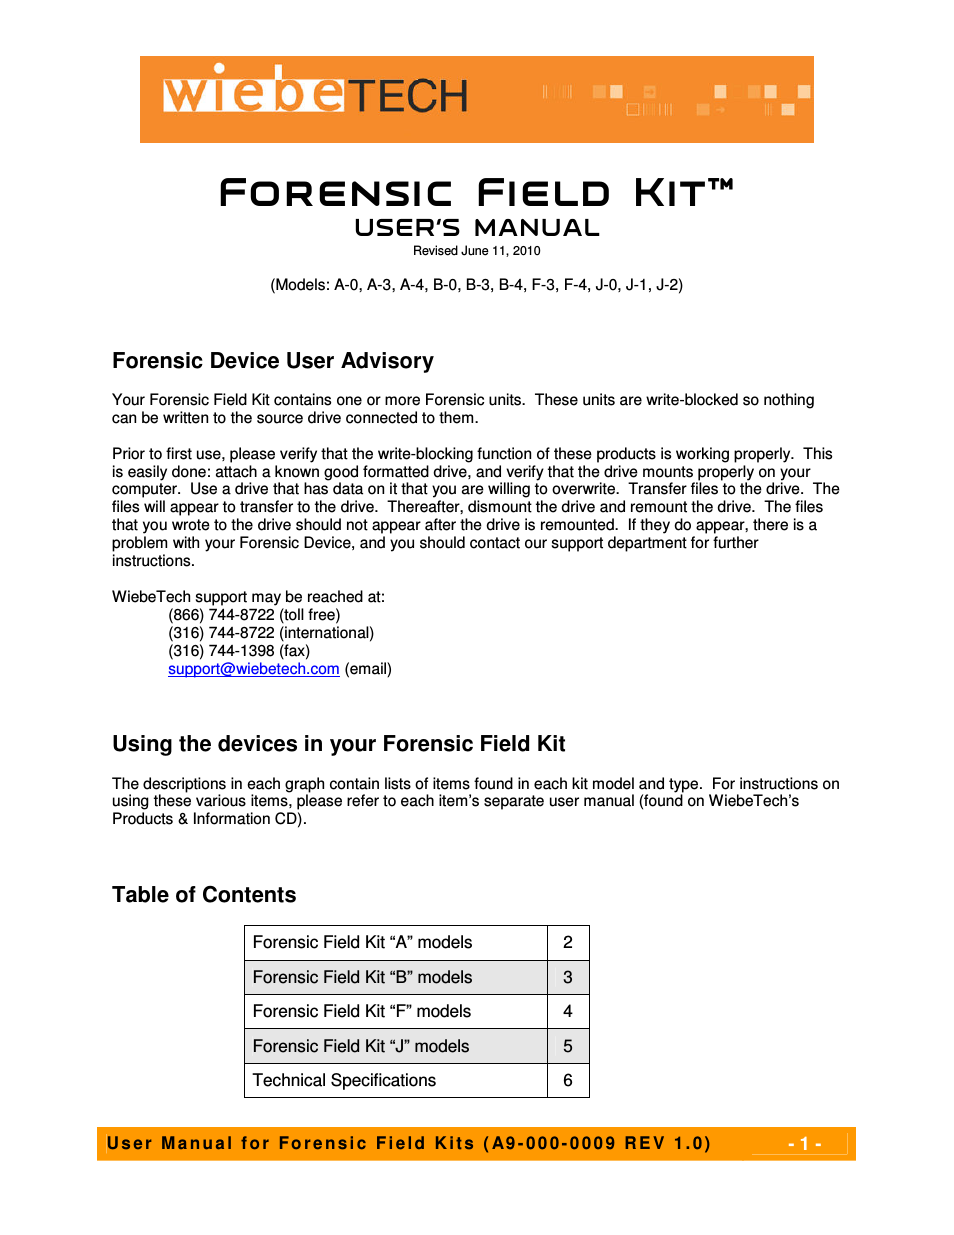 Forensic Field Kit F